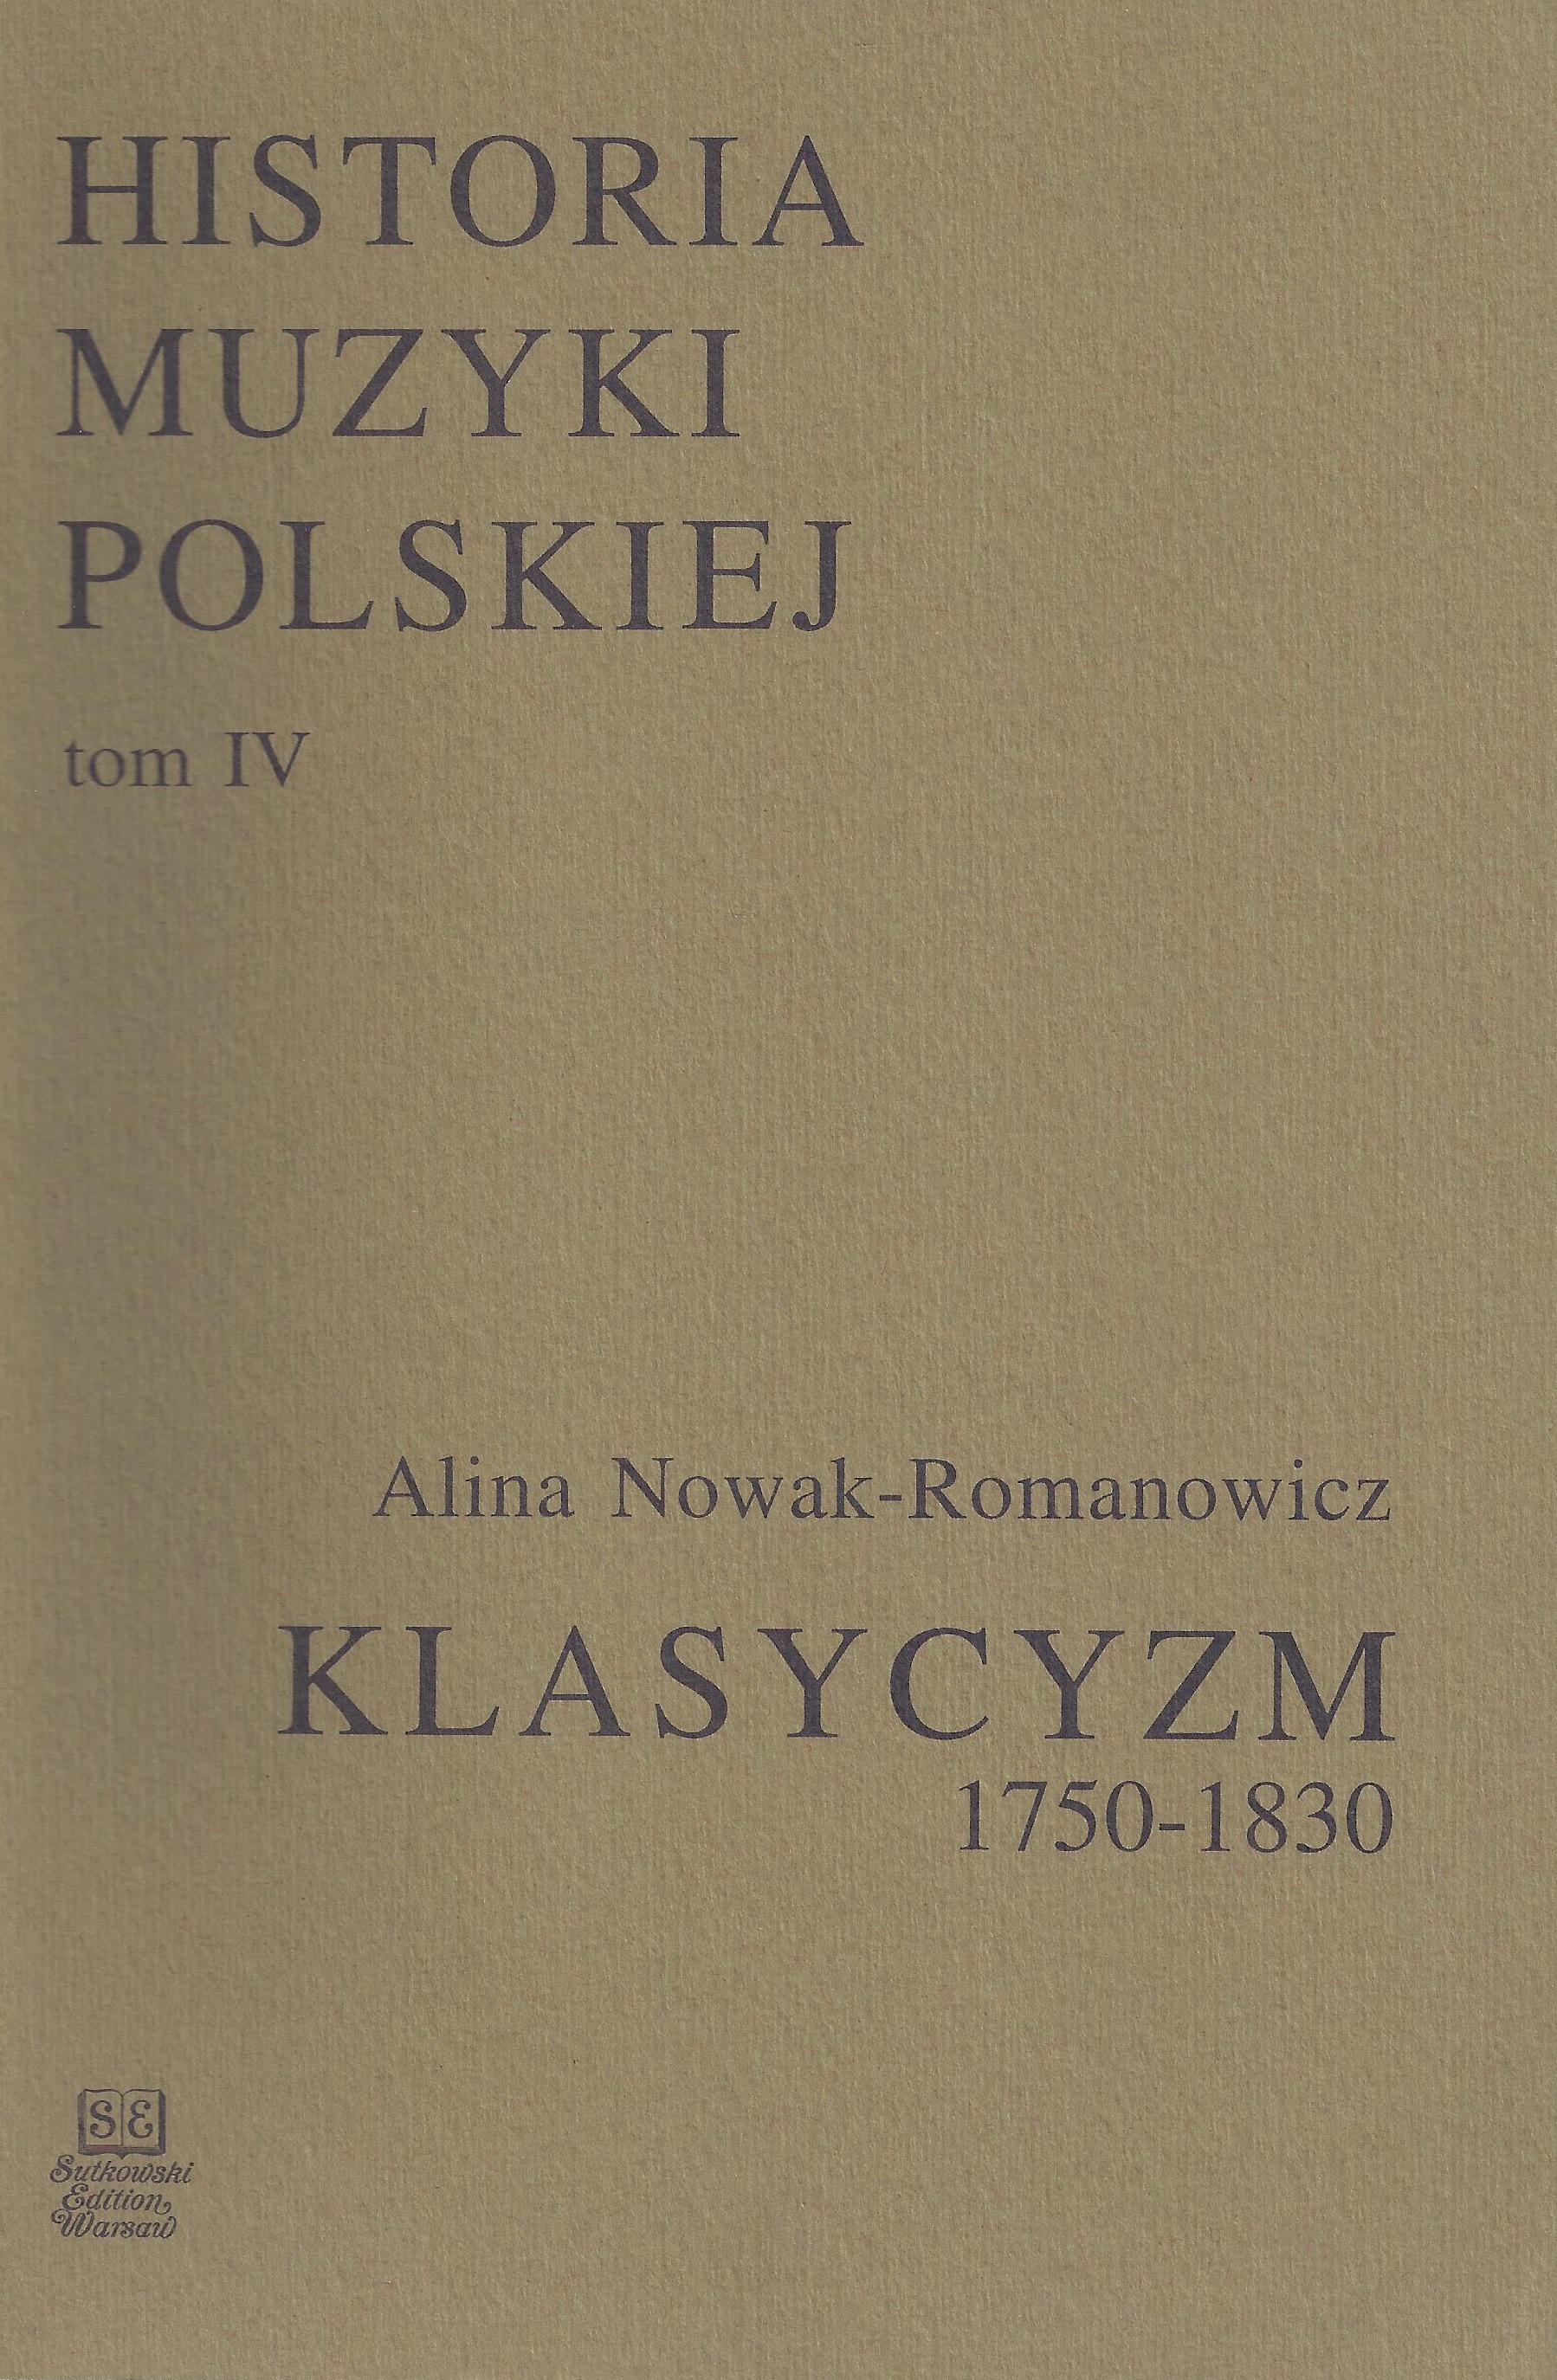 Historia Muzyki Polskiej tom IV – Klasycyzm (1750-1830)